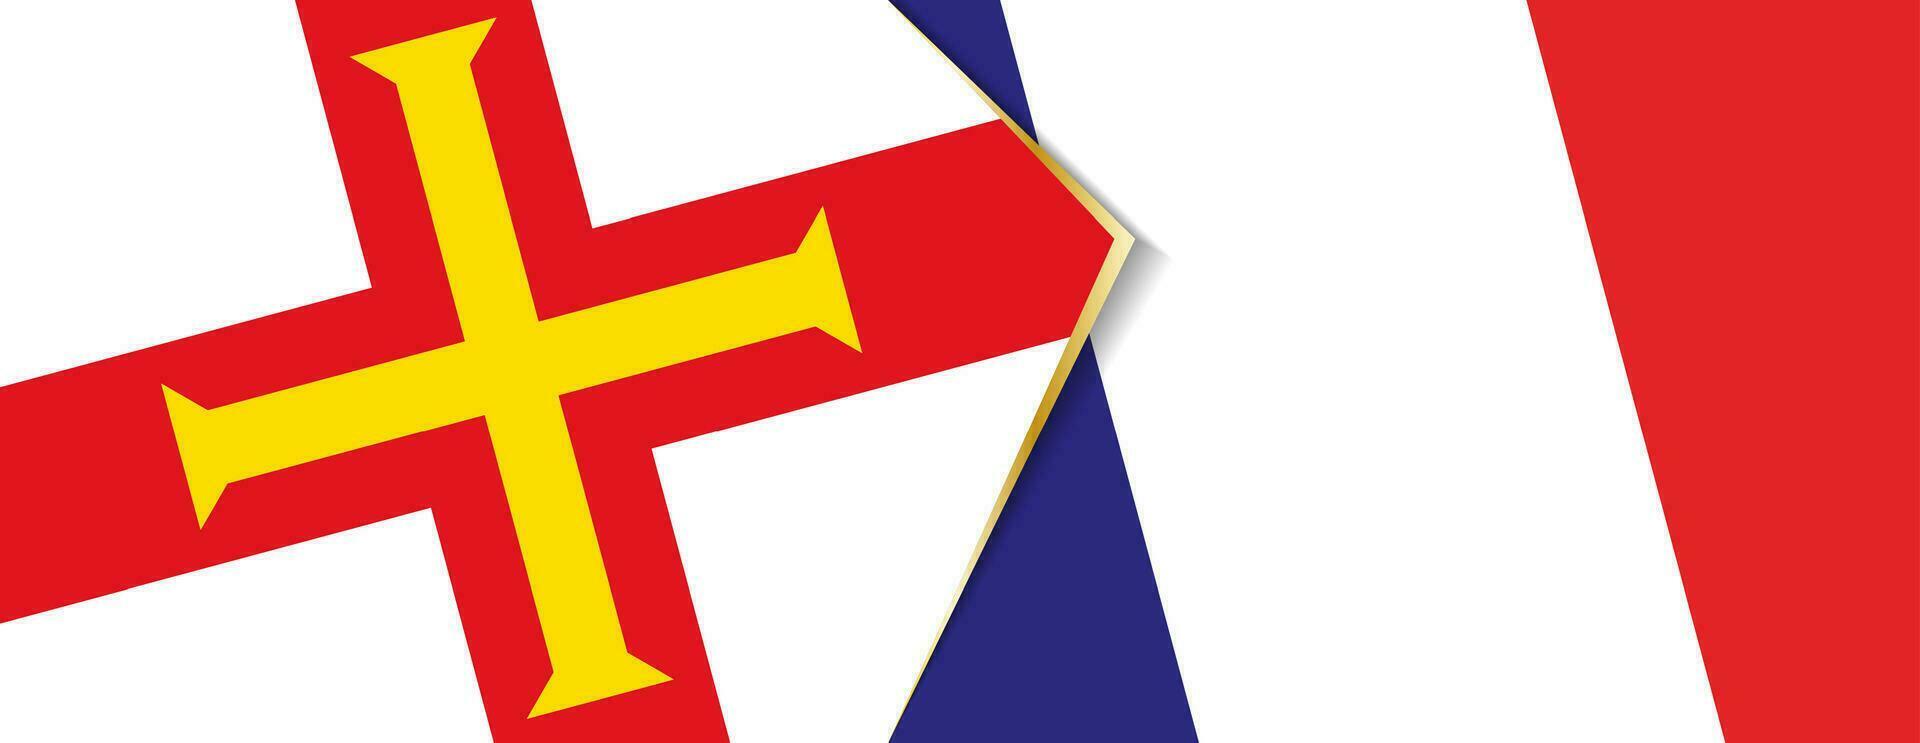 Guernsey und Frankreich Flaggen, zwei Vektor Flaggen.